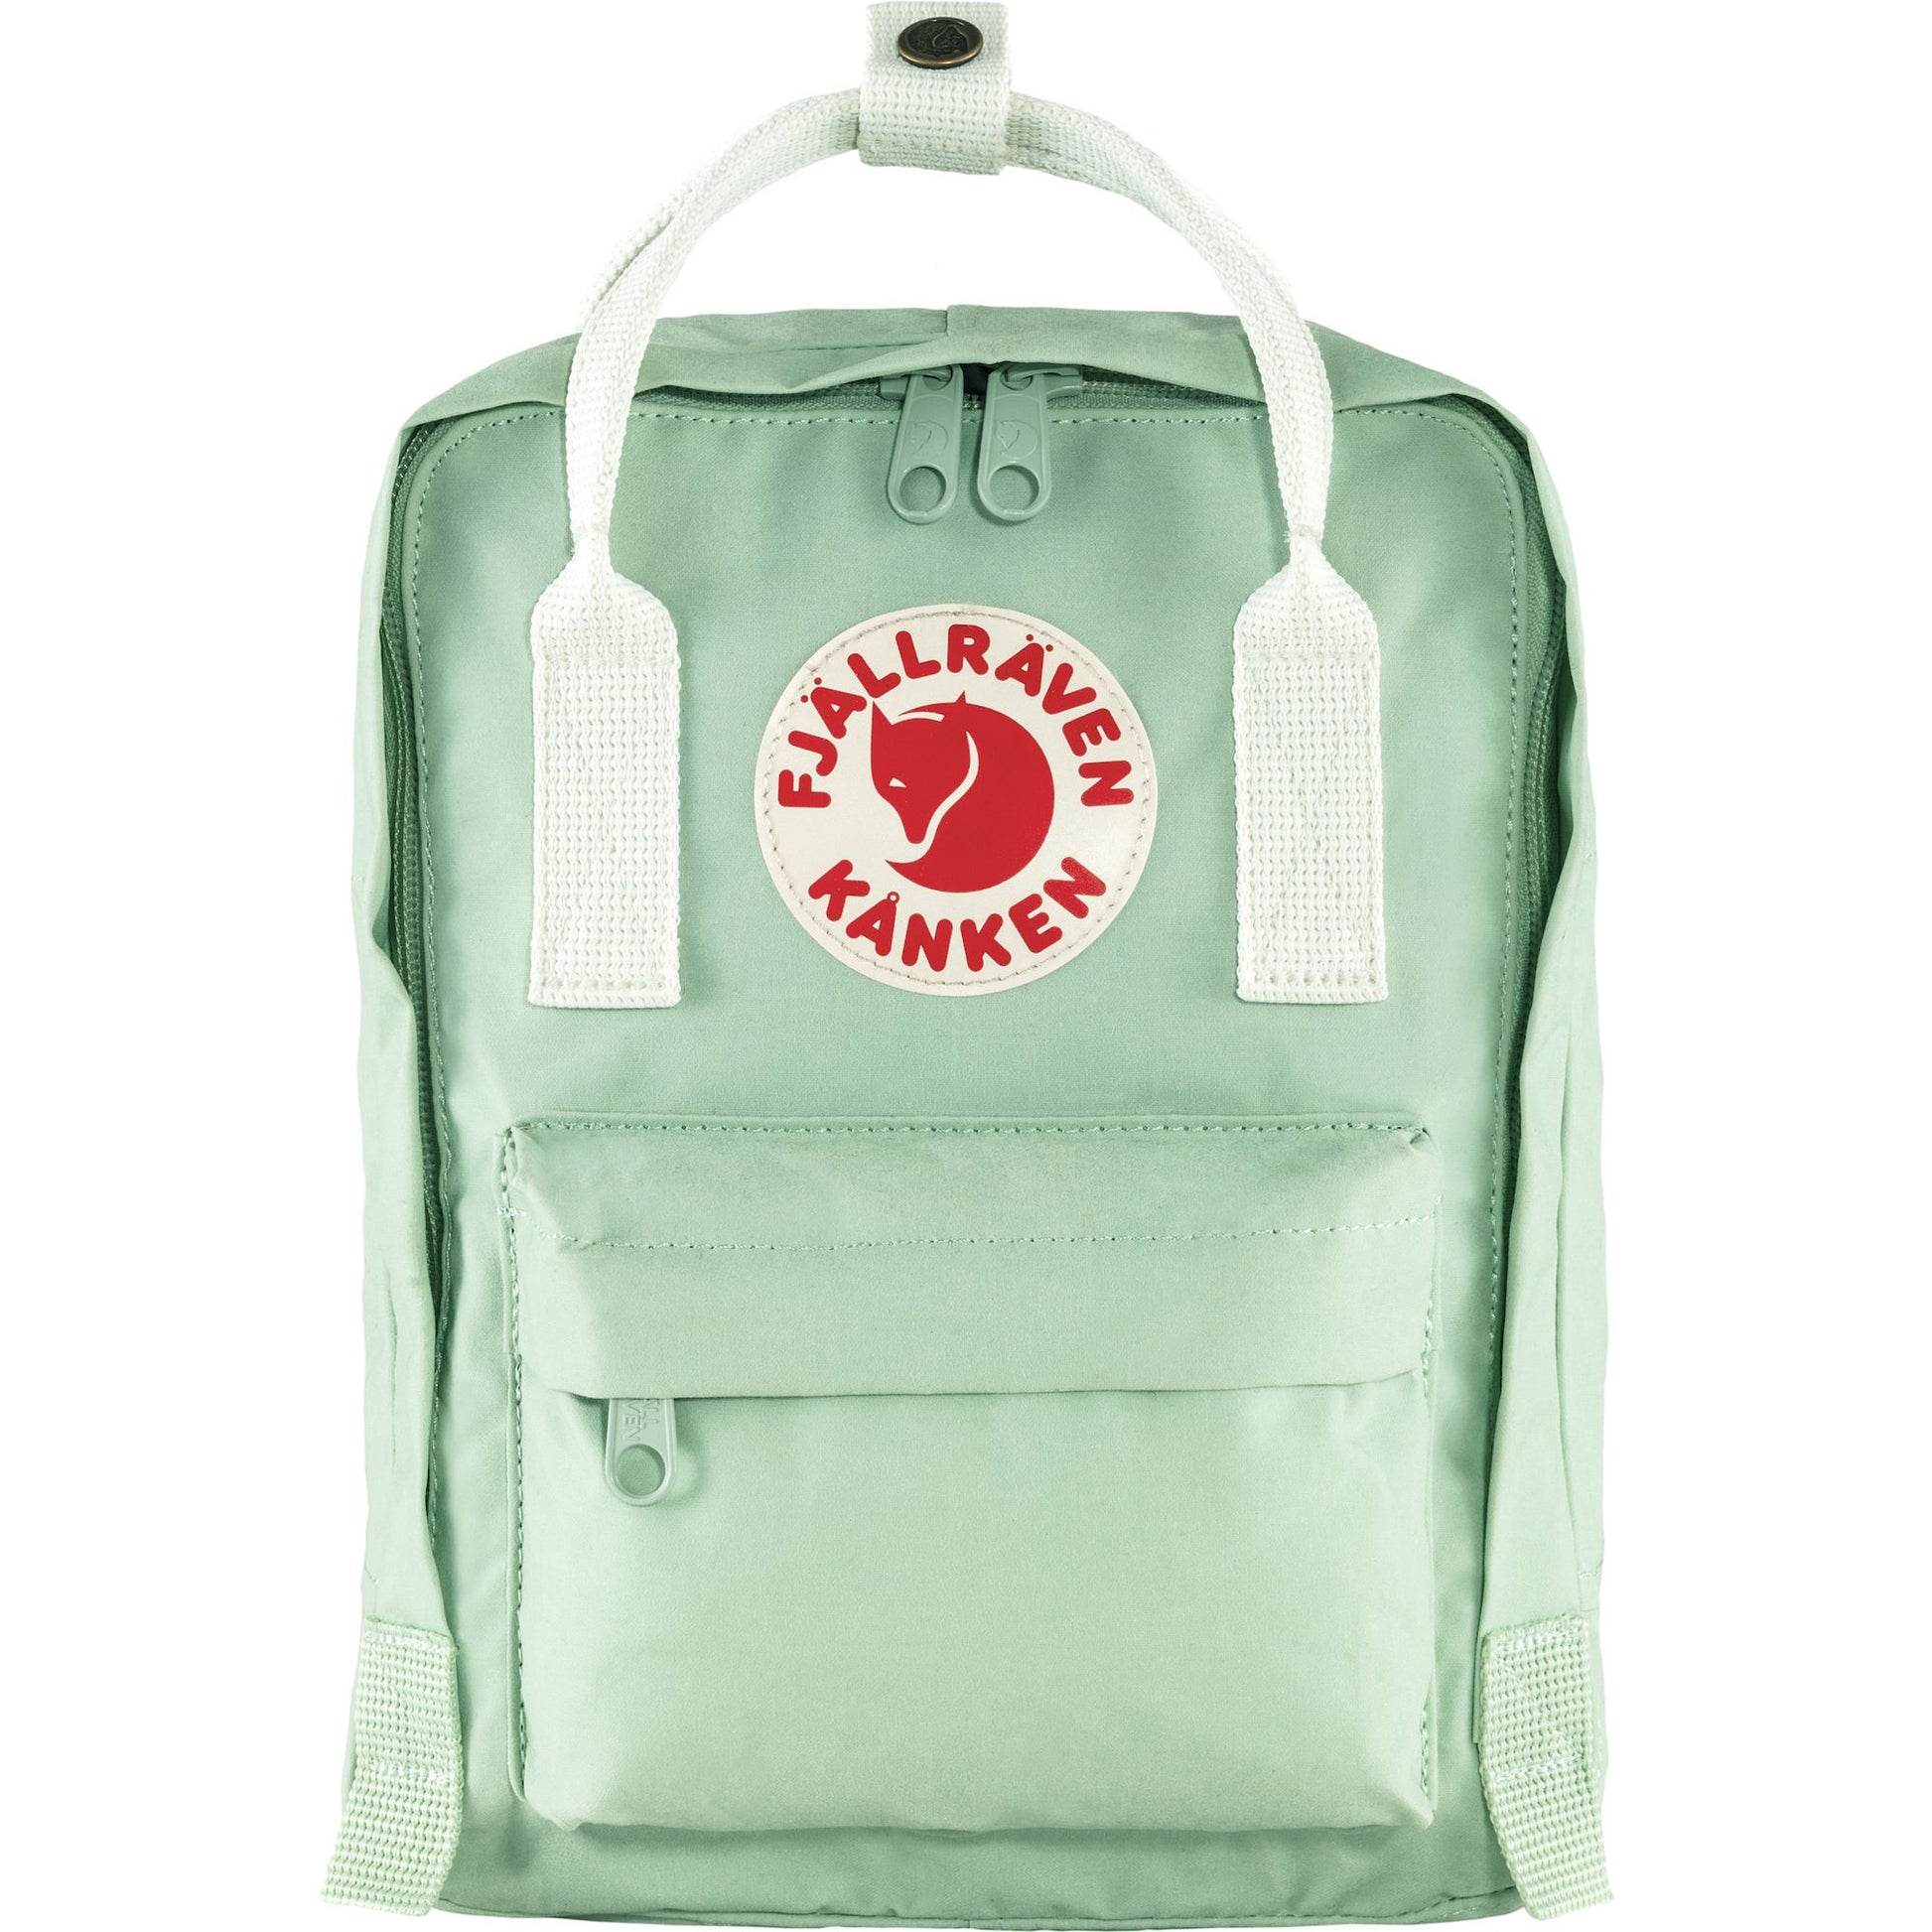 Mini light green backpack